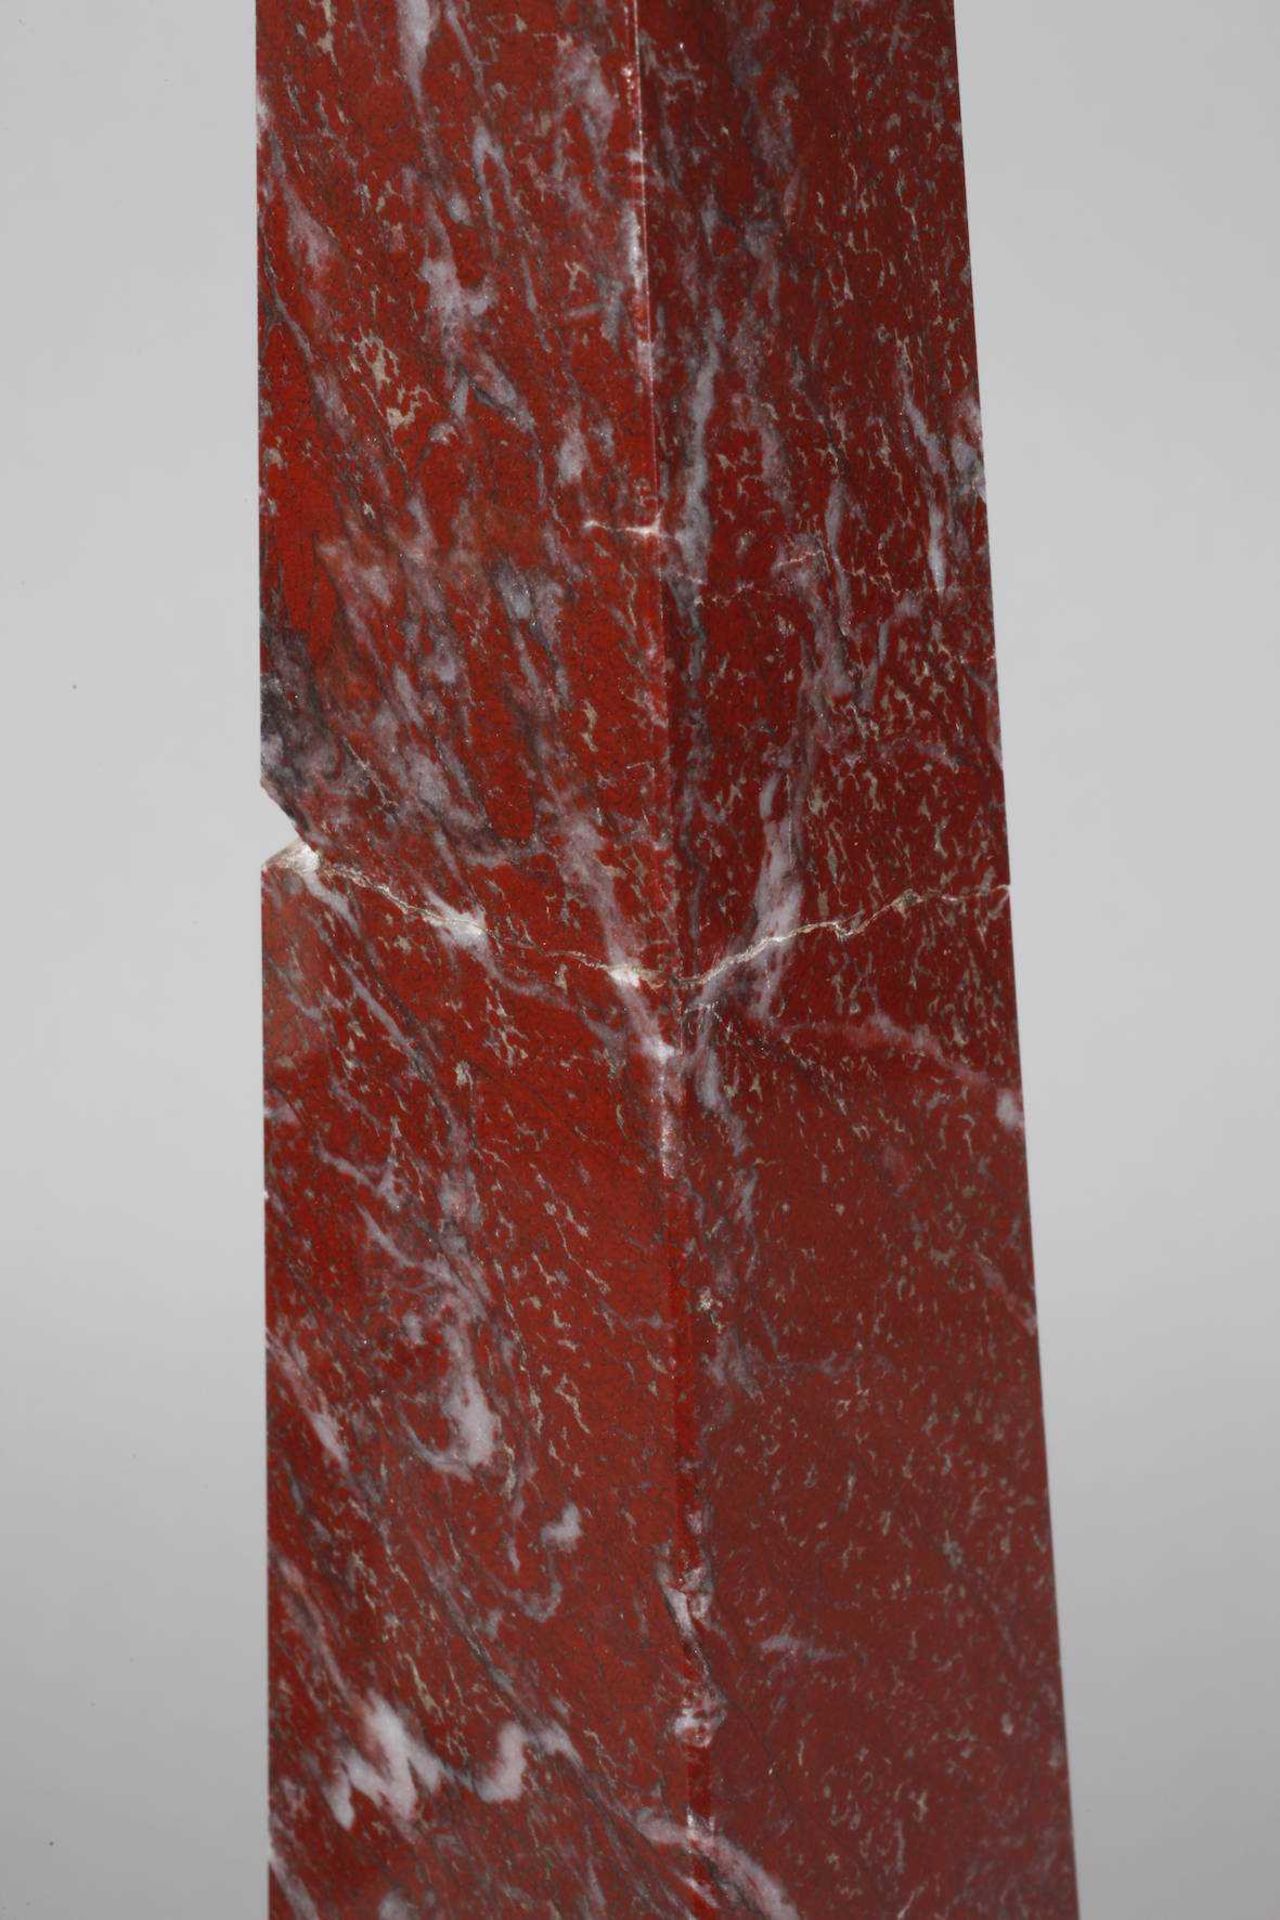 Paar Obelisken Anfang 20. Jh., roter Marmor, mehrteilig gefertigt, einer alt repariert, - Bild 3 aus 3